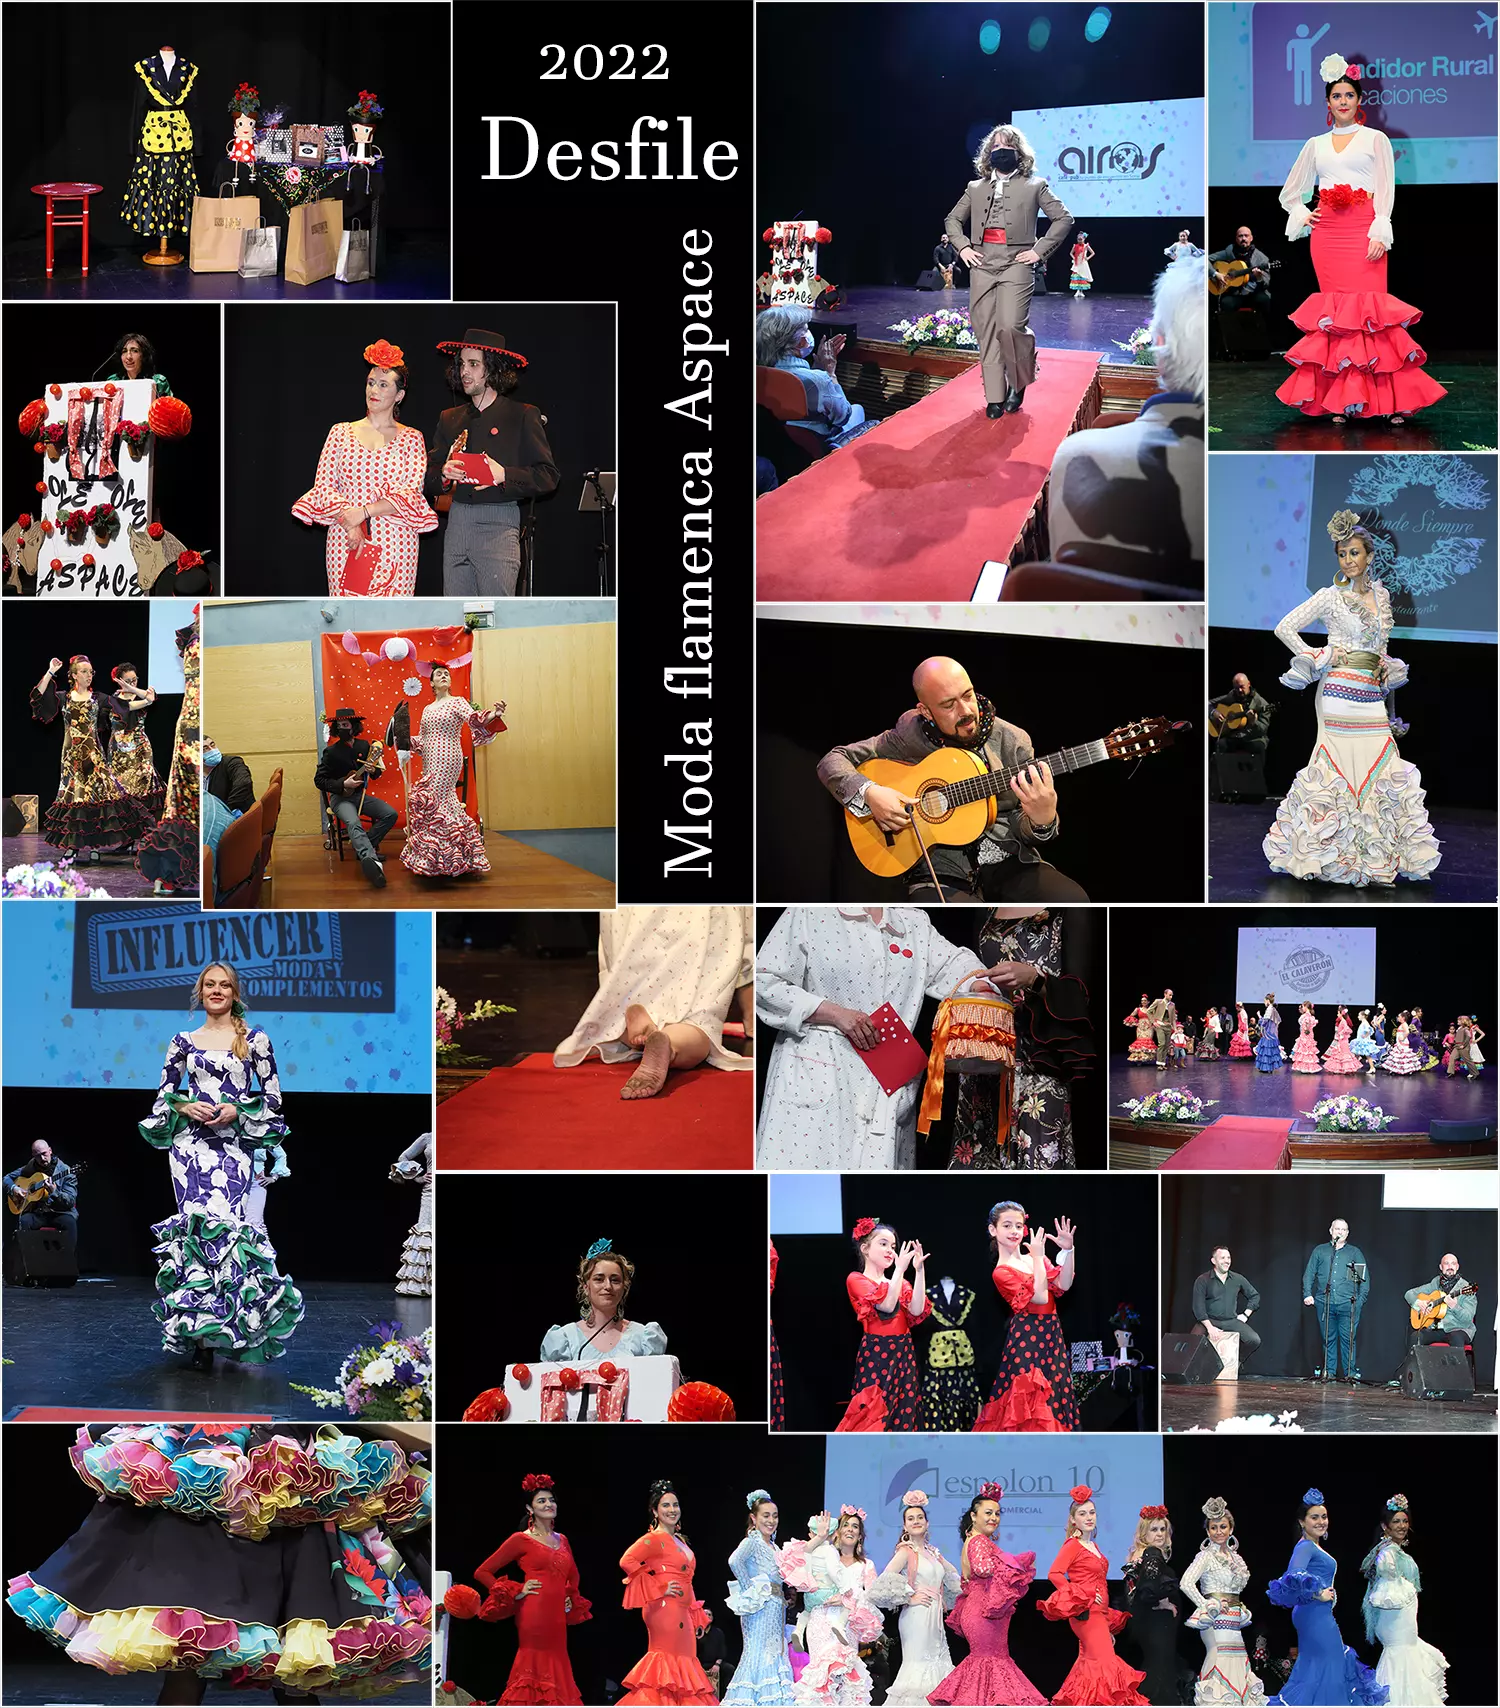 El día 8 de abril se celebro en favor de Aspace el desfile de moda flamenca